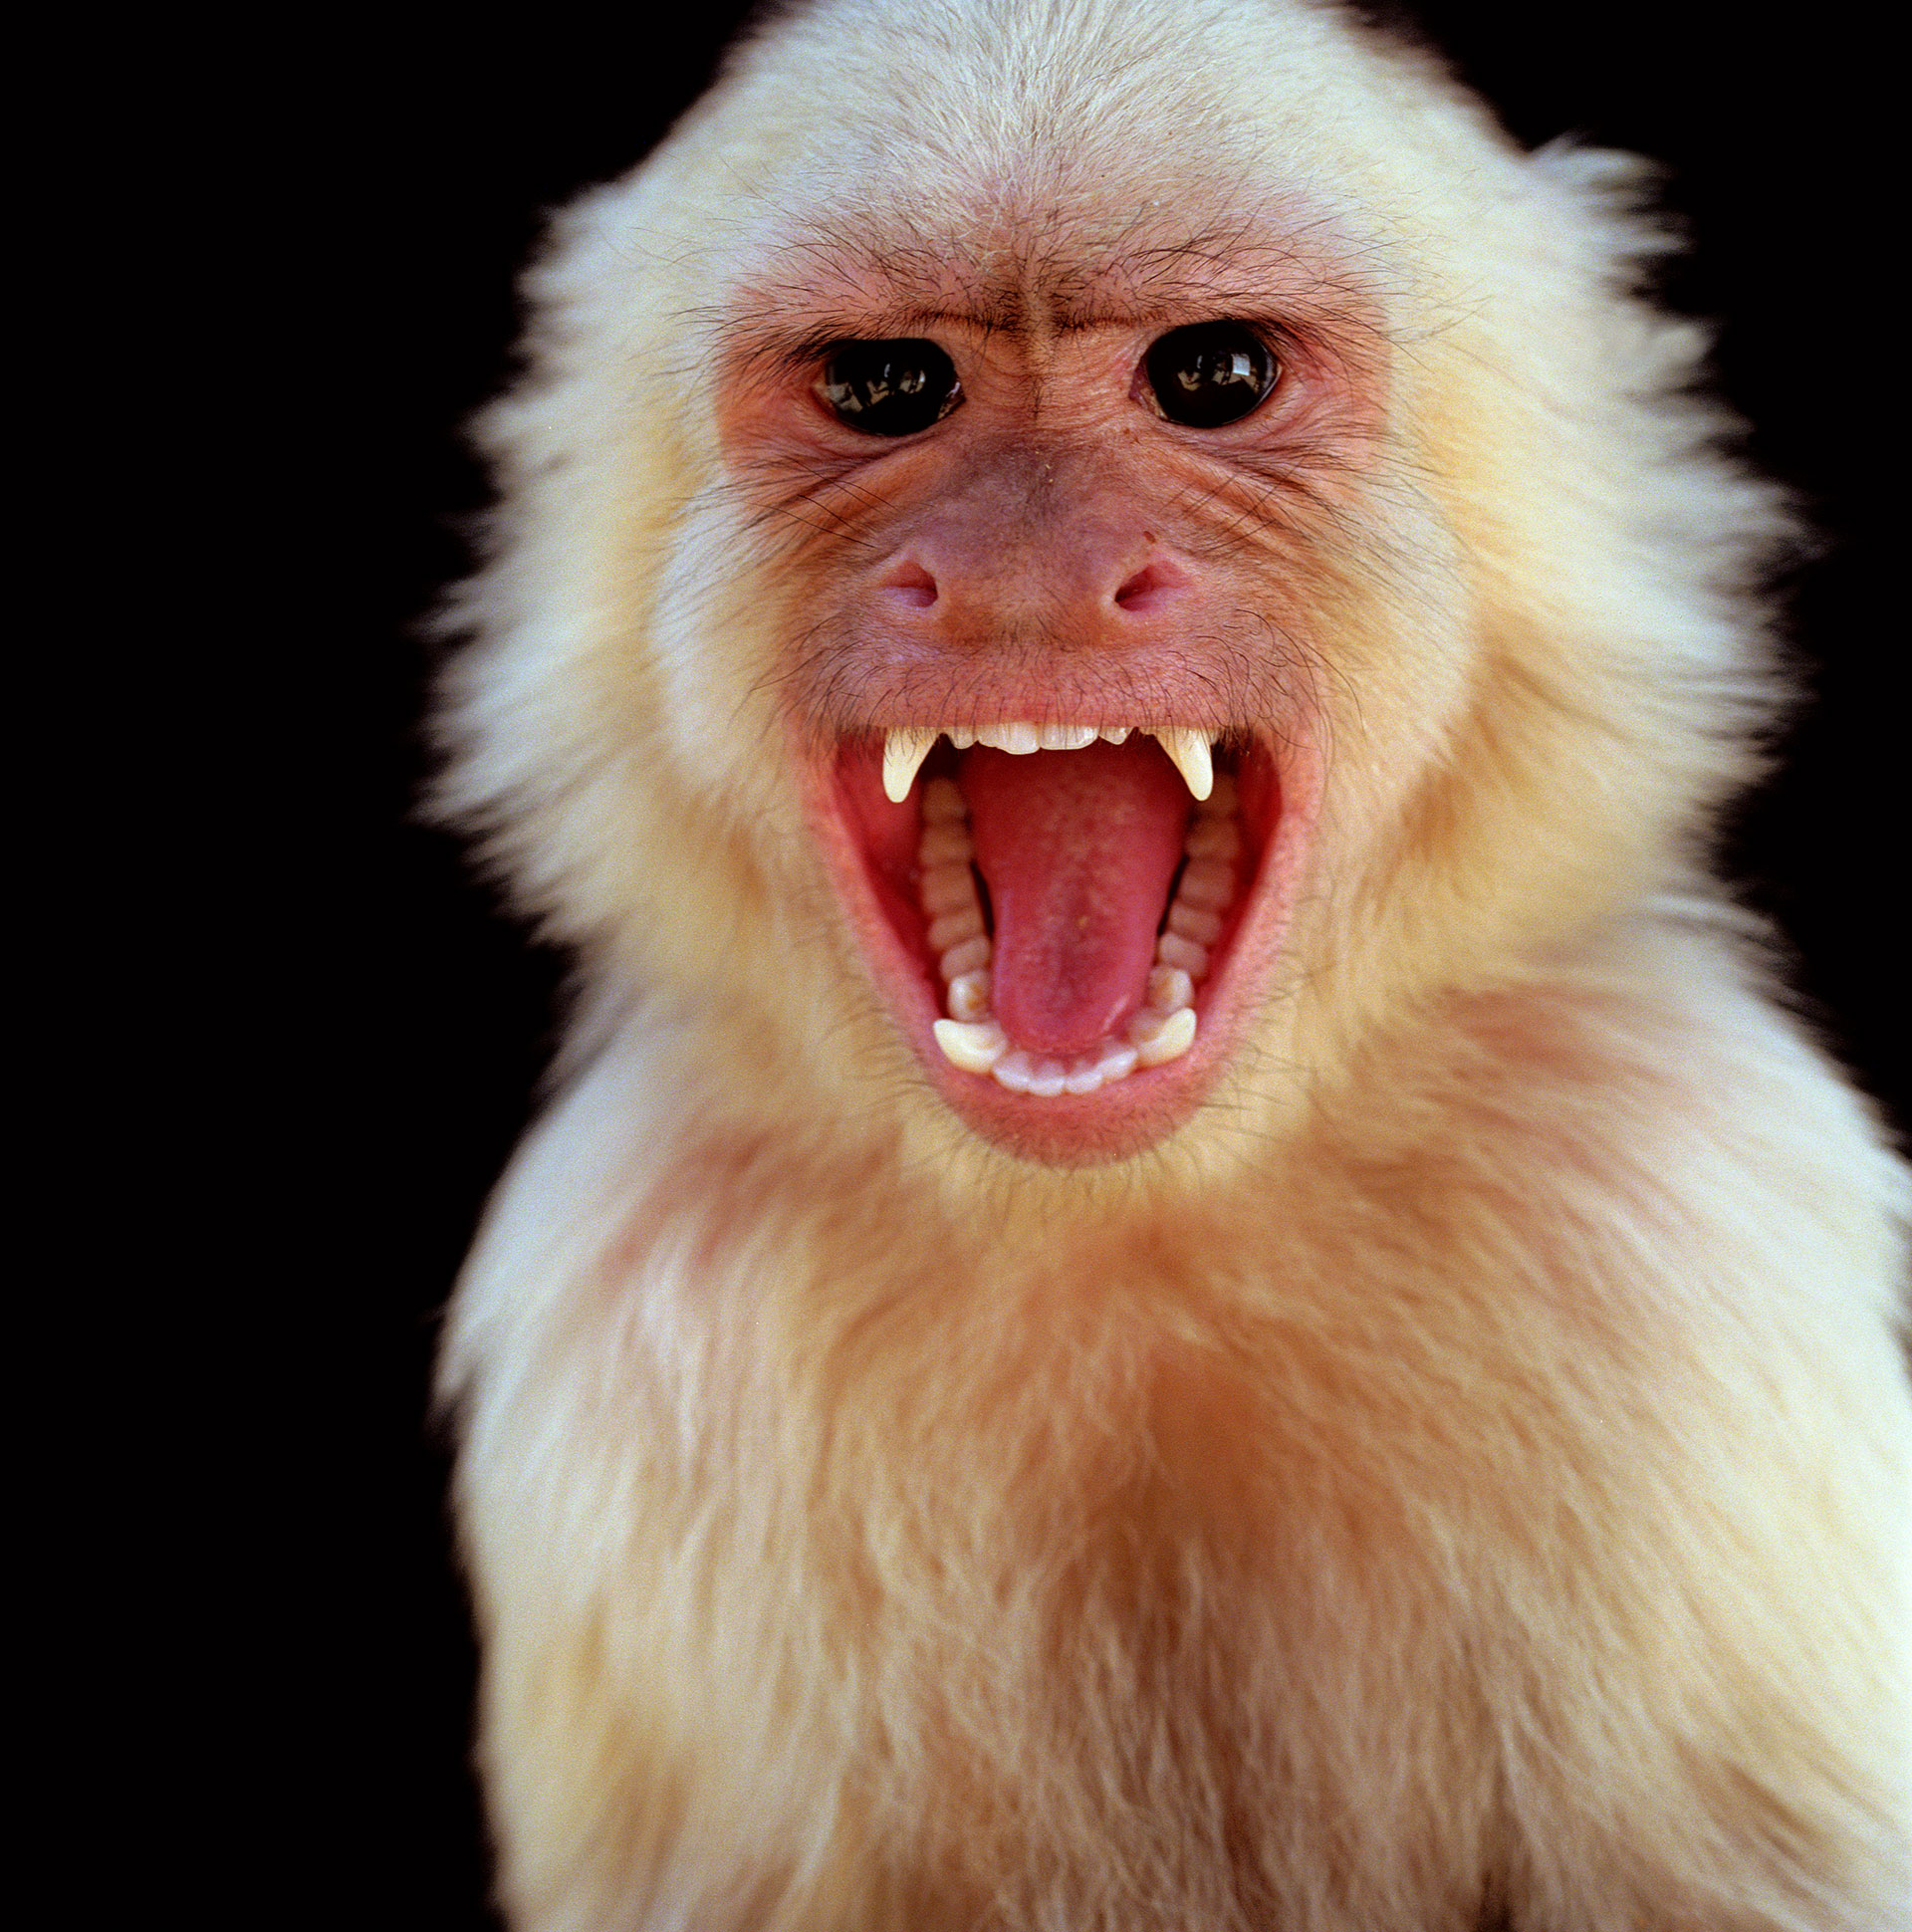 "En general, se produce en los animales, en los primates (monos), pero se cree que el reservorio son pequeños roedores como las ardillas, desde las cuales se transmiten al mono y después al hombre, ya que se invade mucho el hábitat de estos animales", dijo a Infobae Teijeiro
(Getty Images)